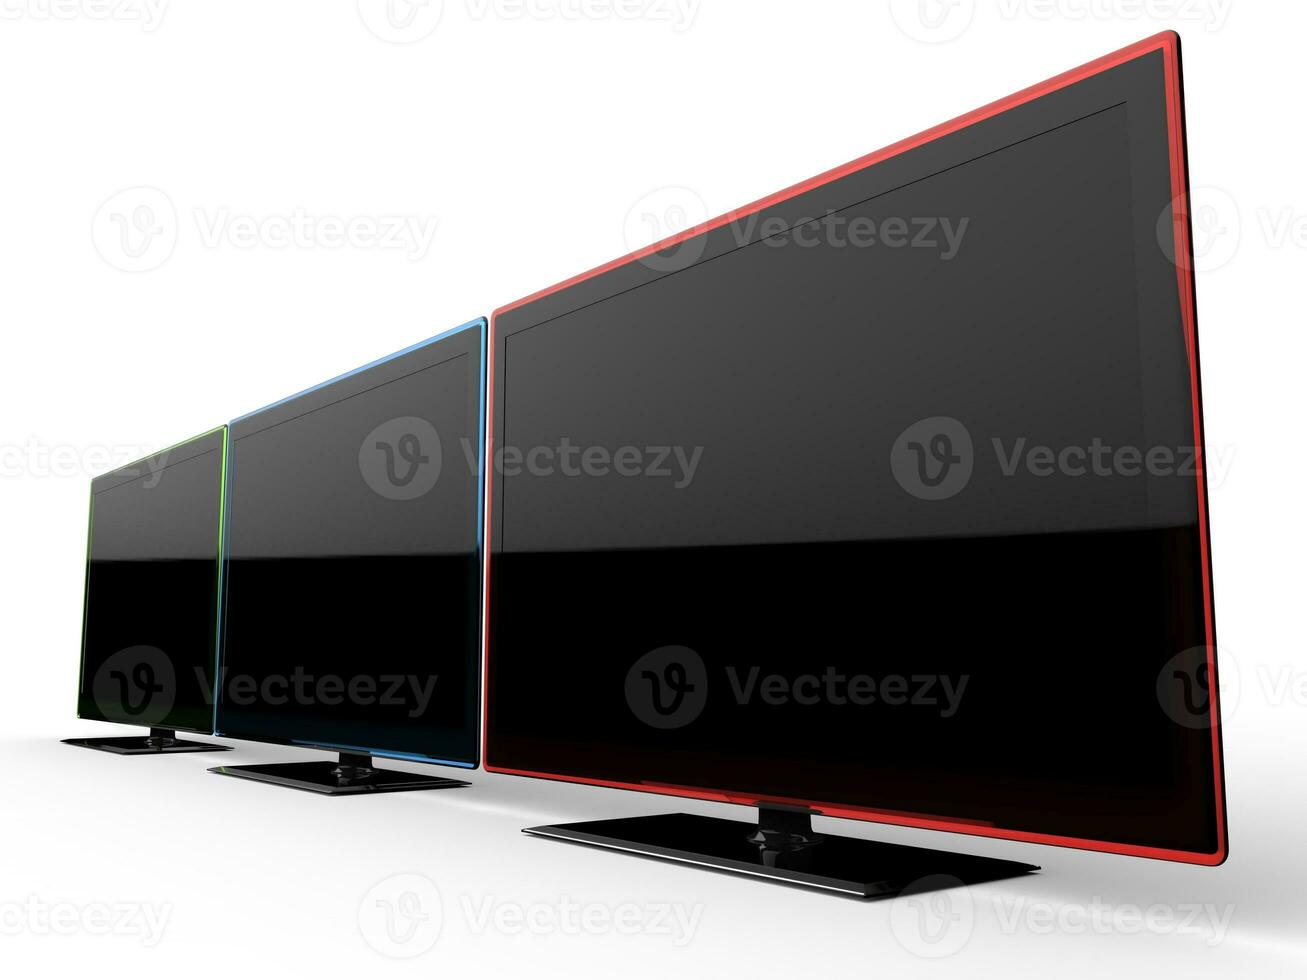 rojo, azul, y verde televisión conjuntos - lado ver foto